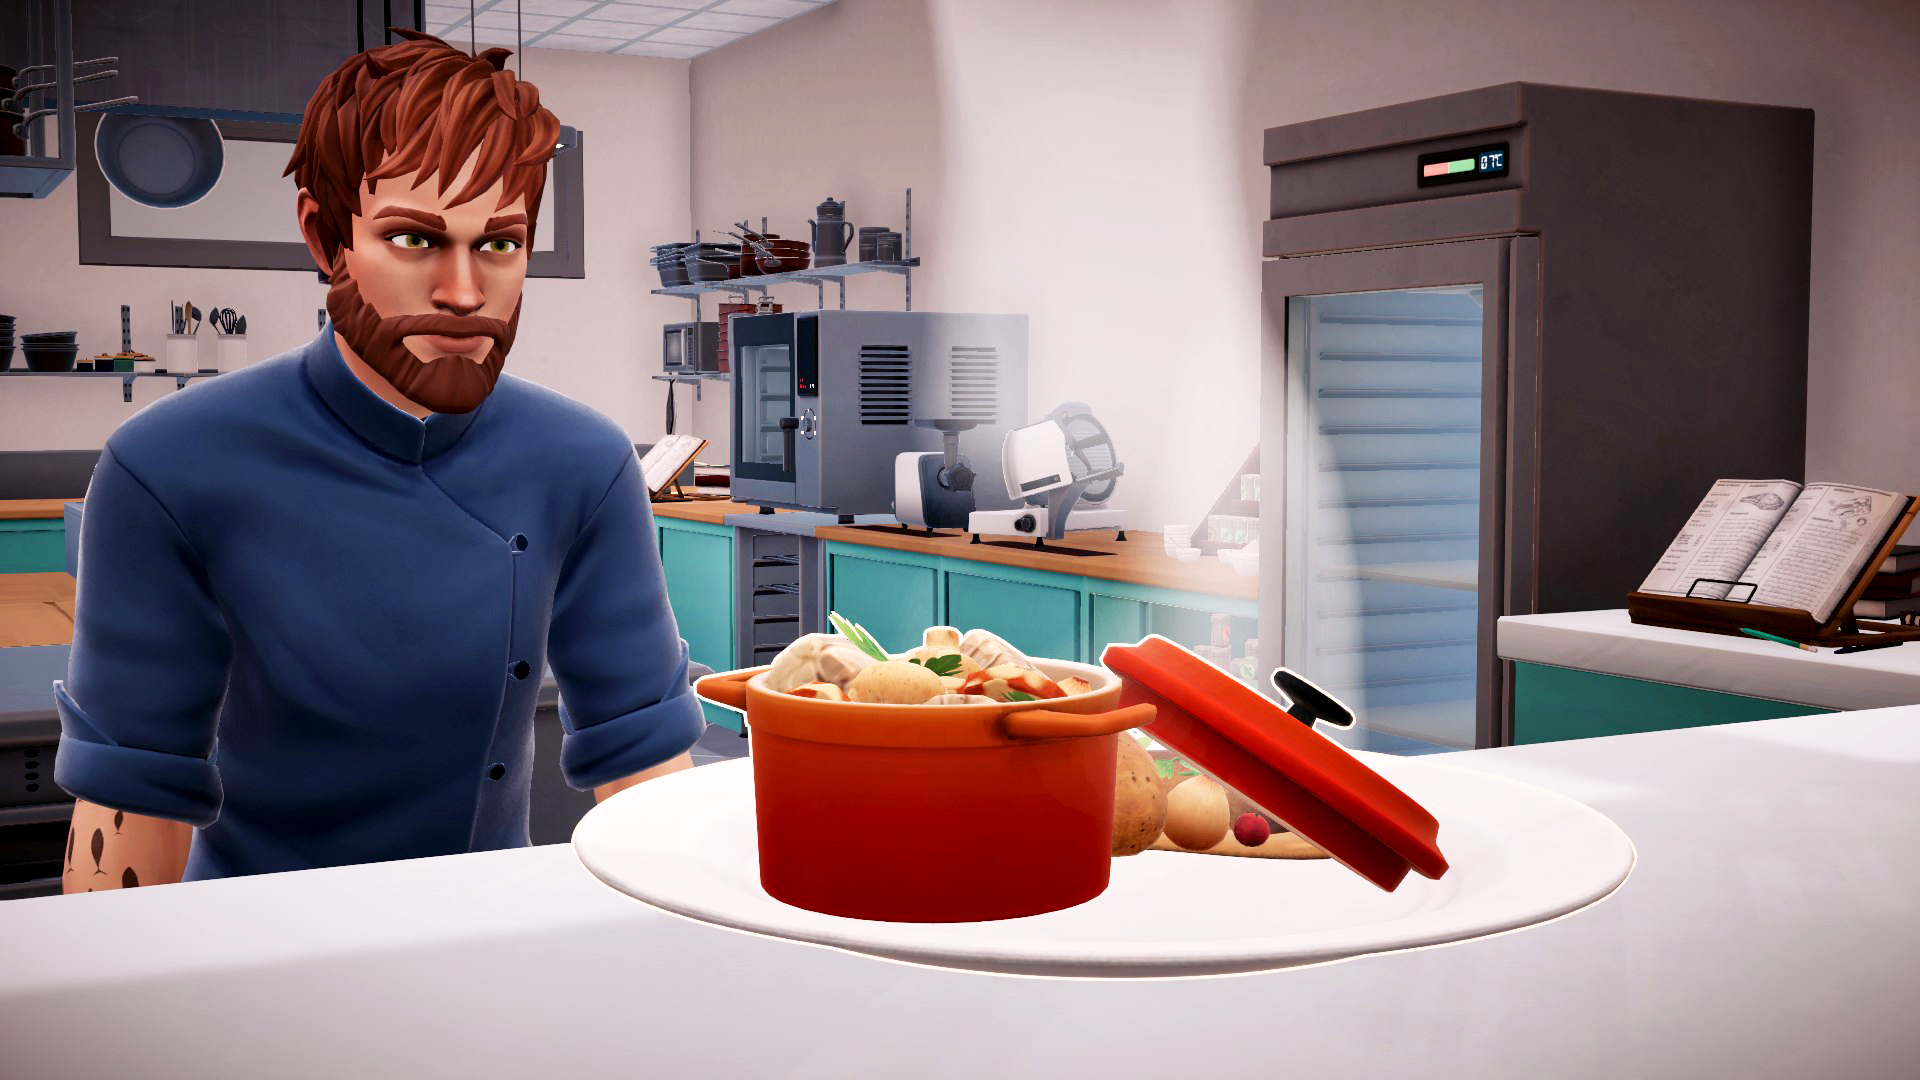 Chef Life: A Restaurant Simulator - 5] Forno Edition Al - [PlayStation